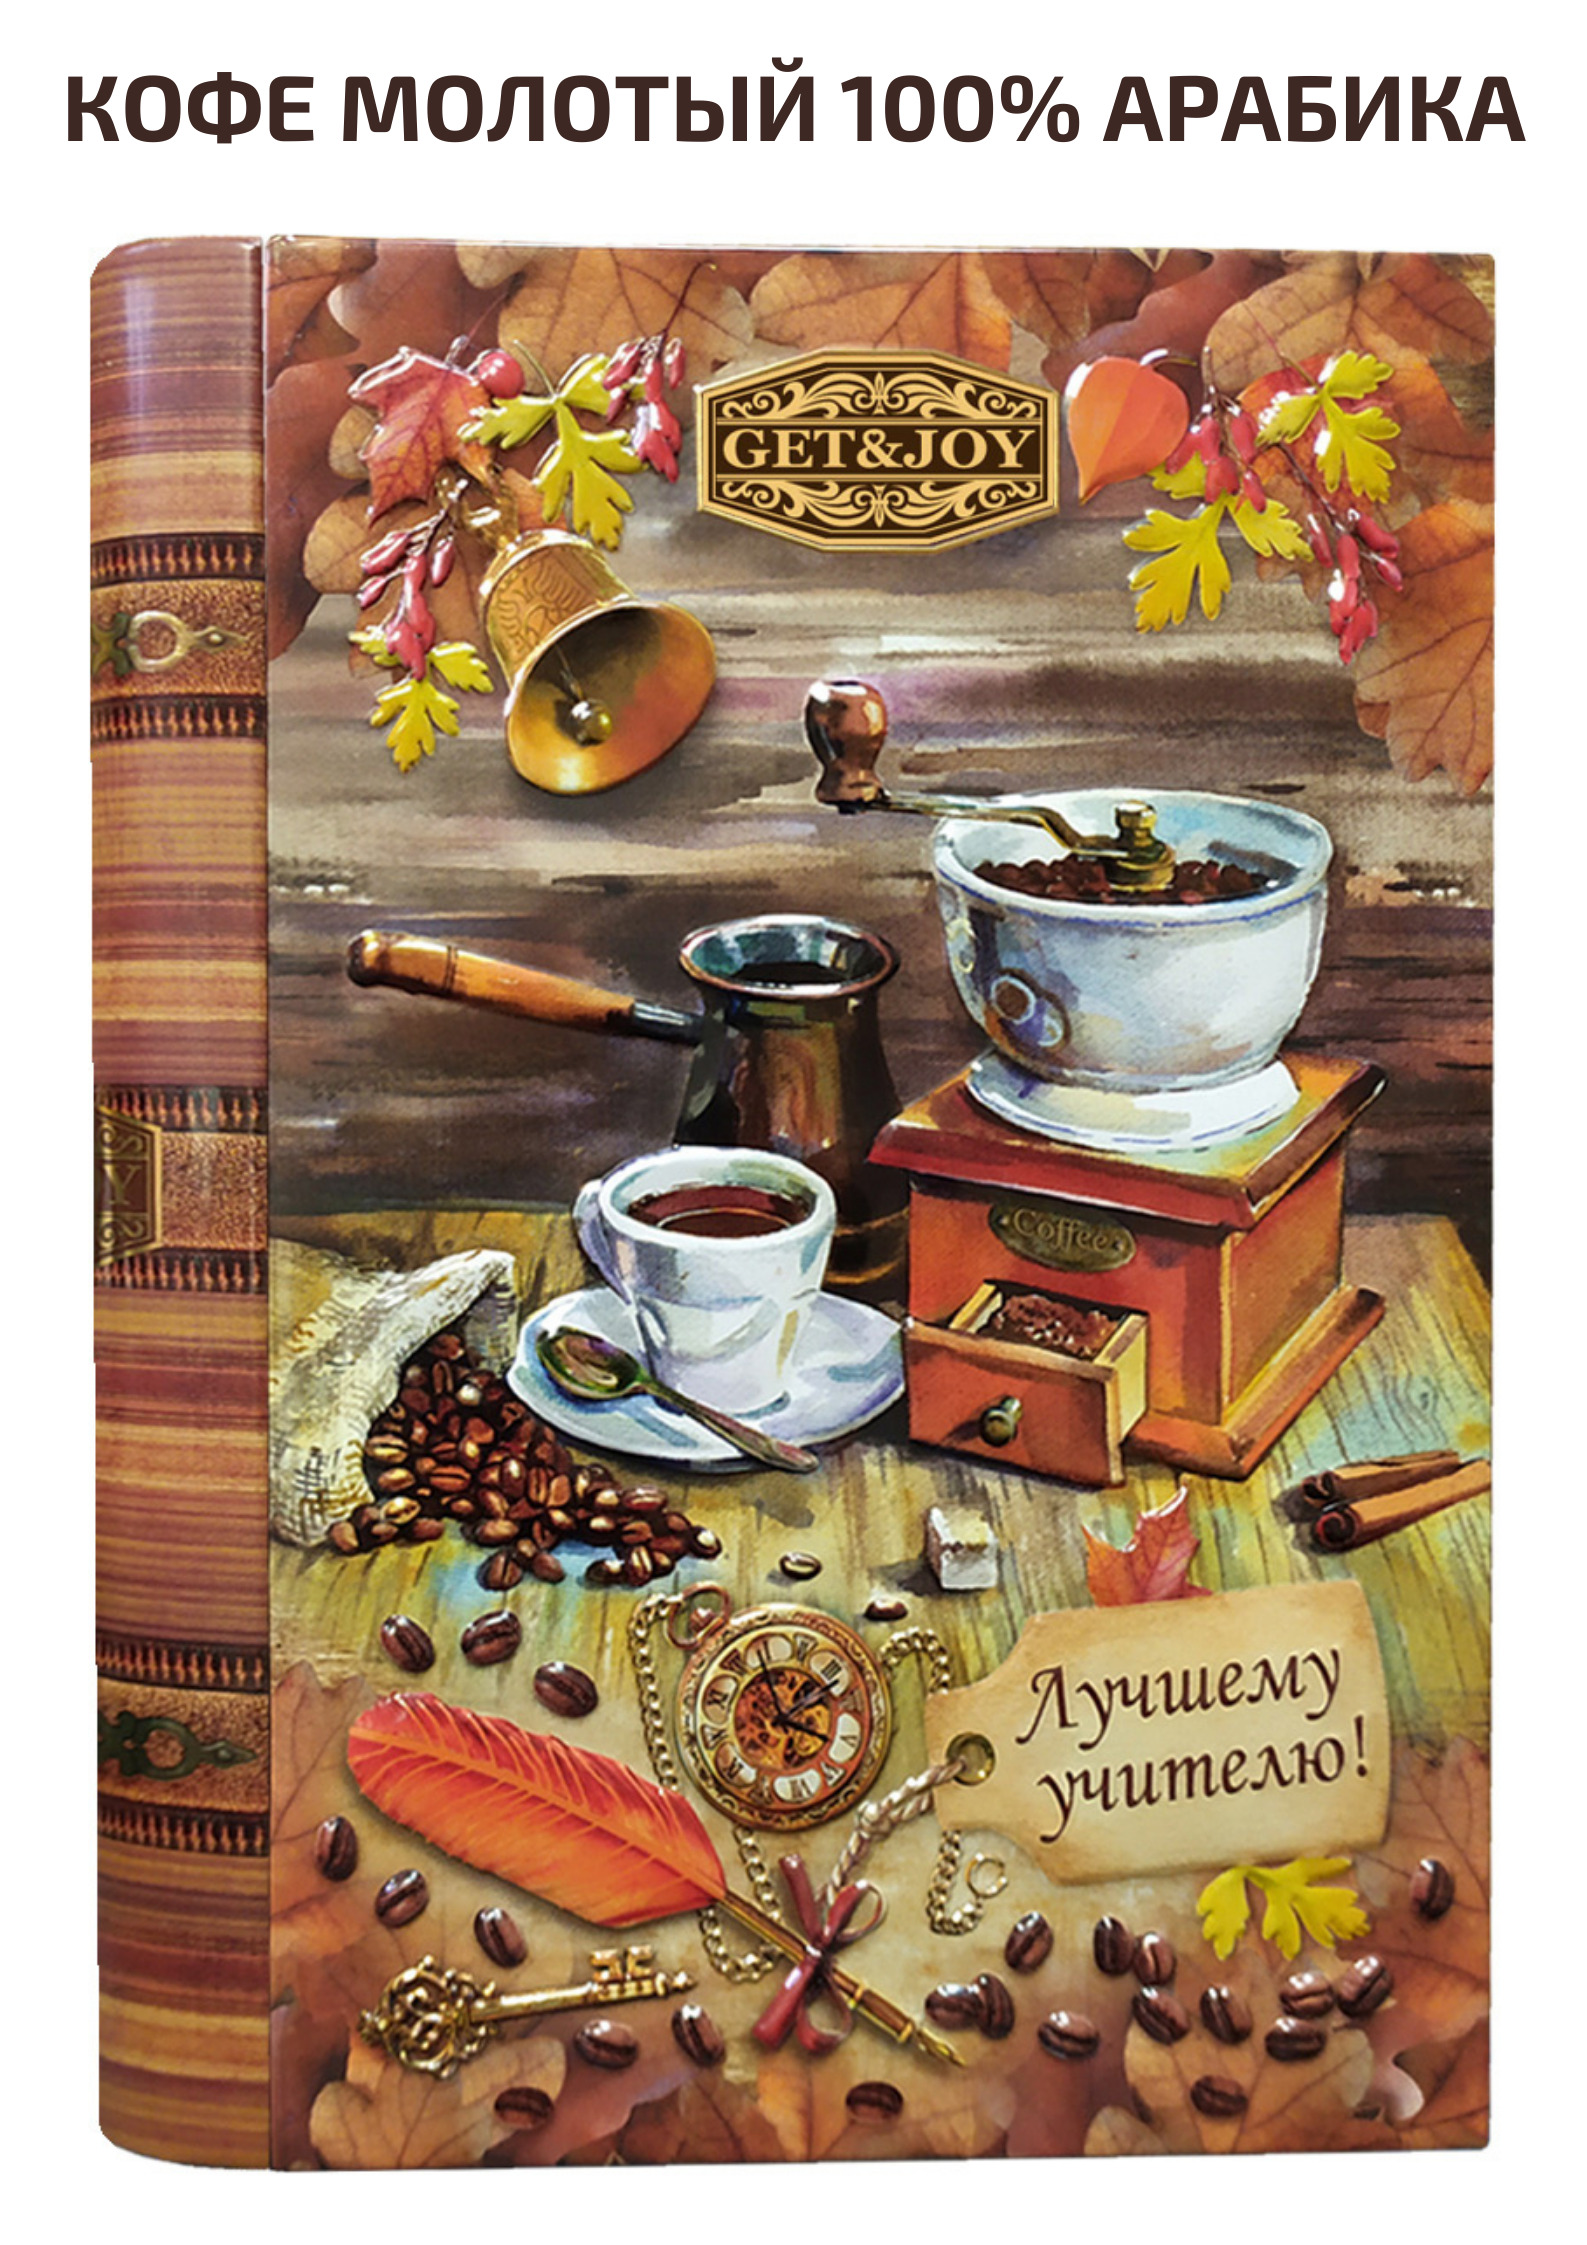 Кофе молотый GET&JOY в жестяной книге подарок Учителю, 100% Арабика, Бразилия, 150 г